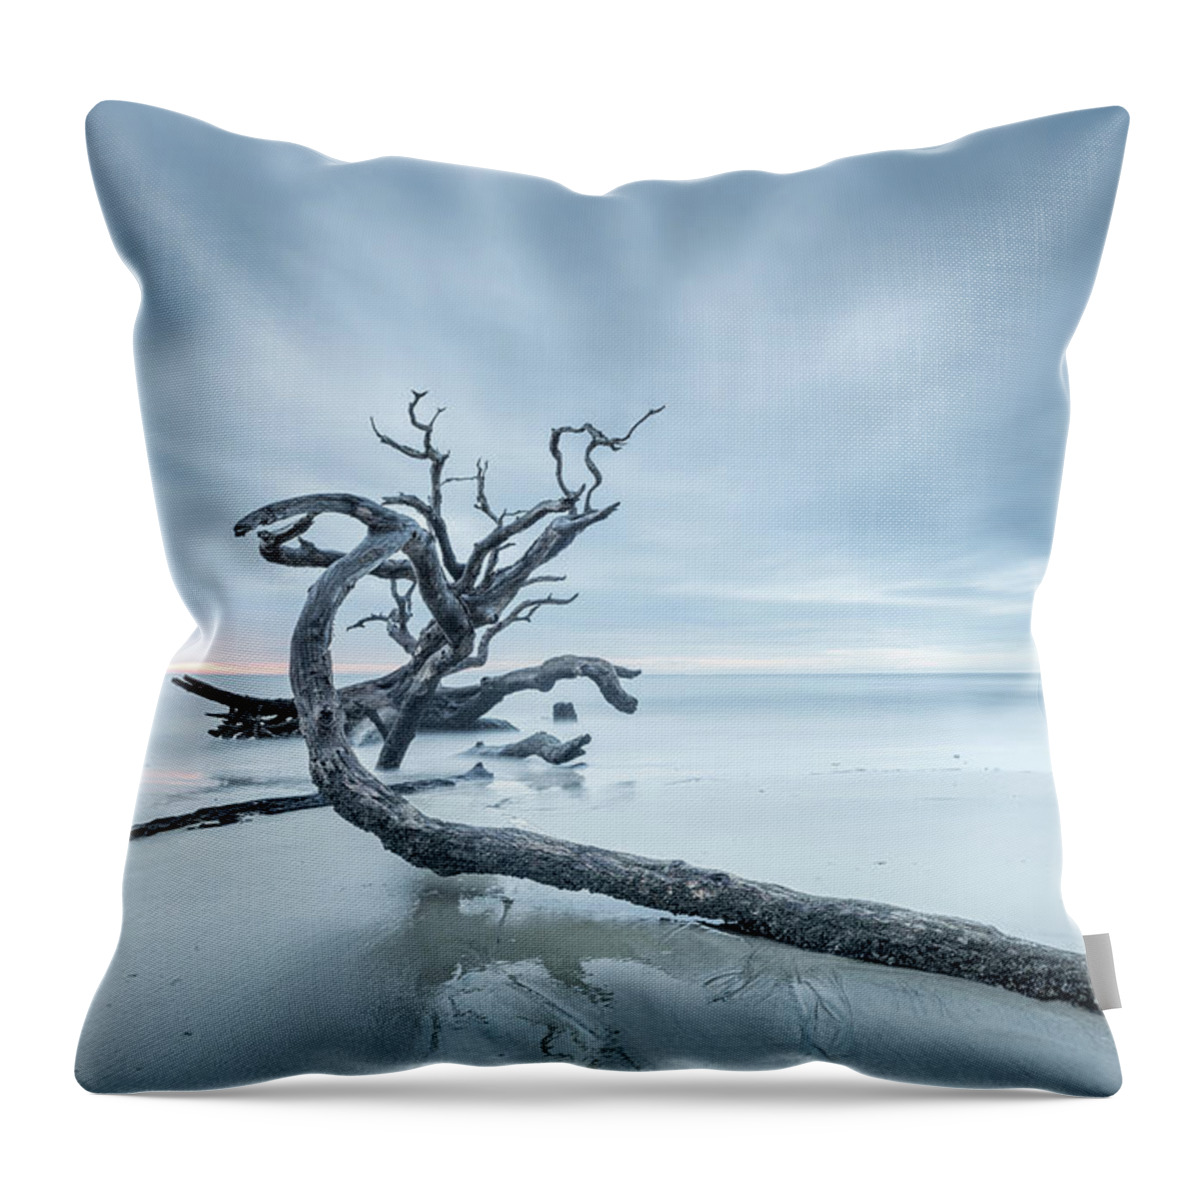 Driftwood Beach Throw Pillow featuring the photograph Ancient Driftwood by Jordan Hill